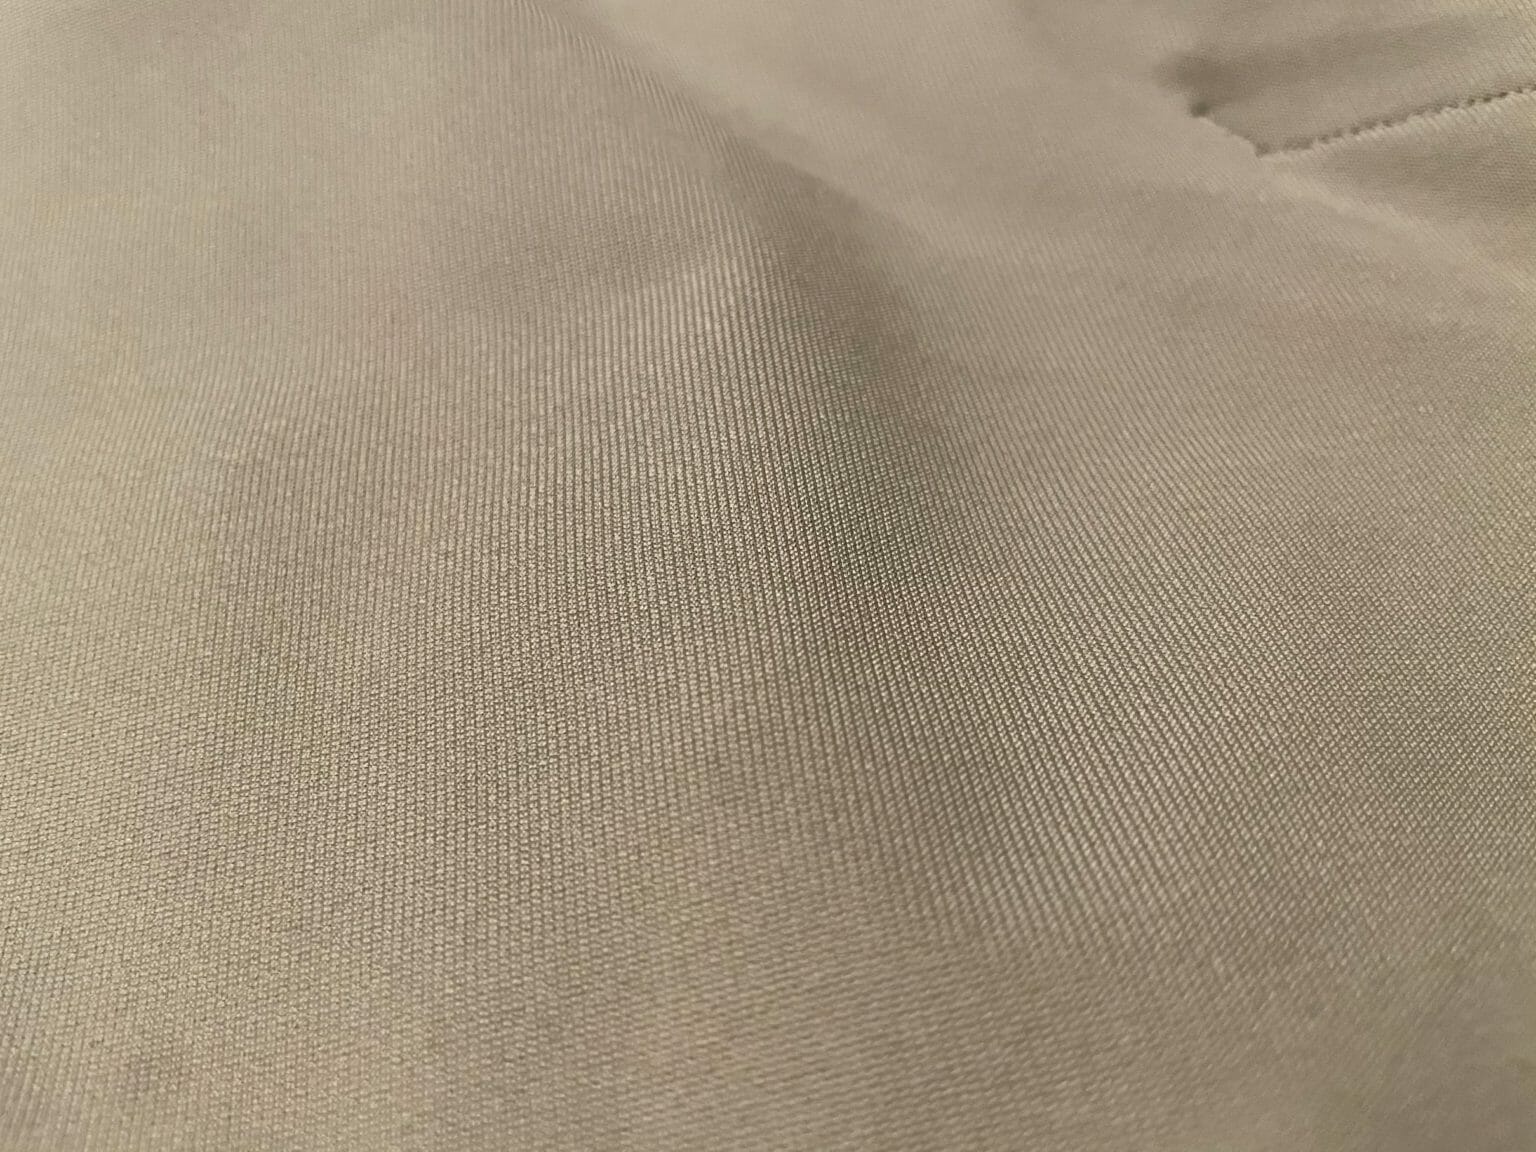 lululemon warpstreme fabric